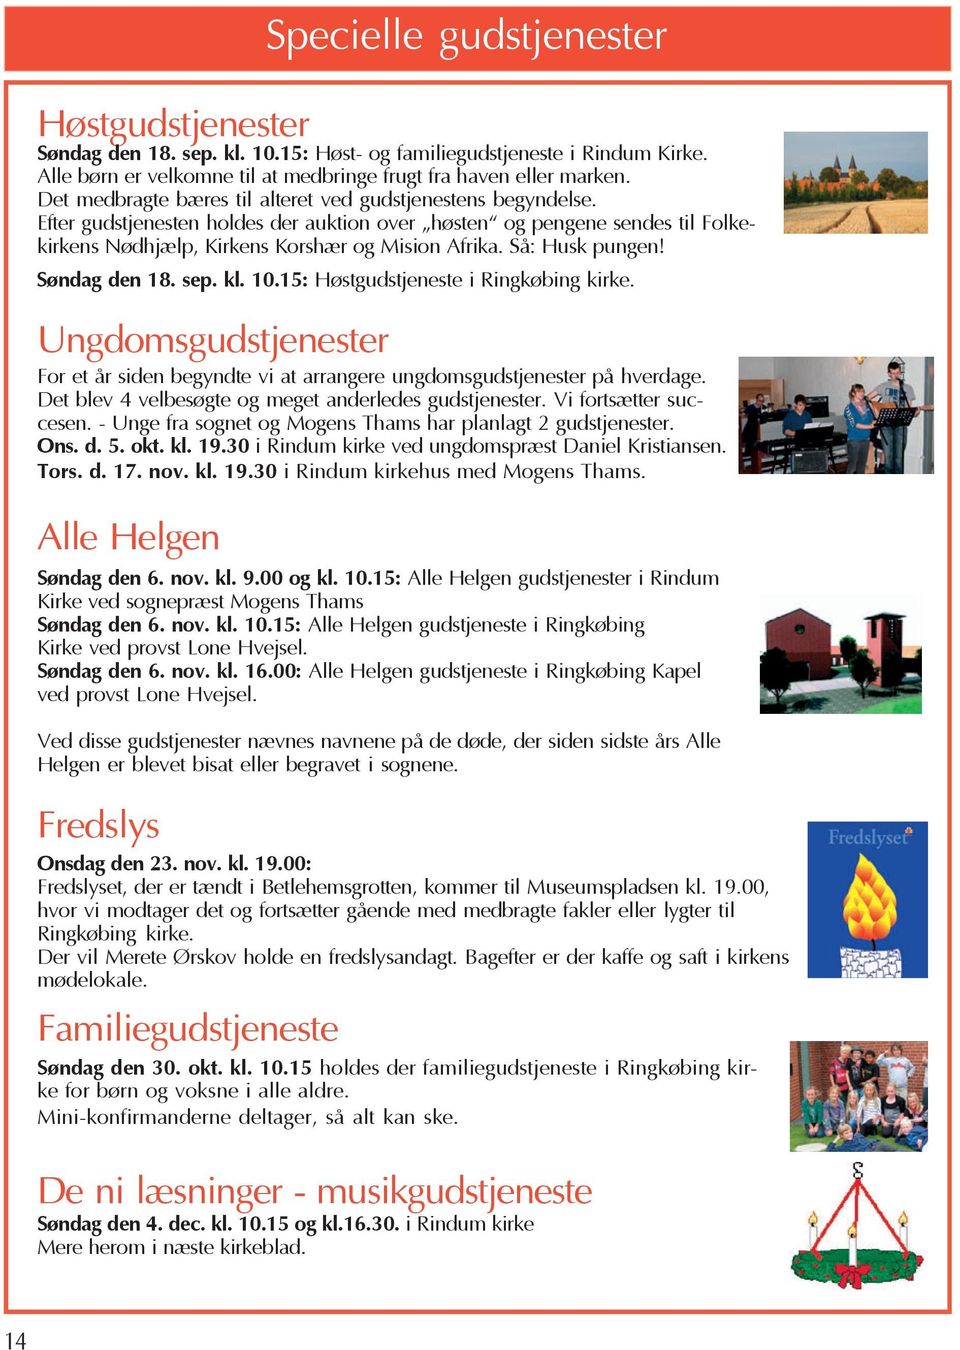 Så: Husk pungen! Søndag den 18. sep. kl. 10.15: Høstgudstjeneste i Ringkøbing kirke. Ungdomsgudstjenester For et år siden begyndte vi at arrangere ungdomsgudstjenester på hverdage.